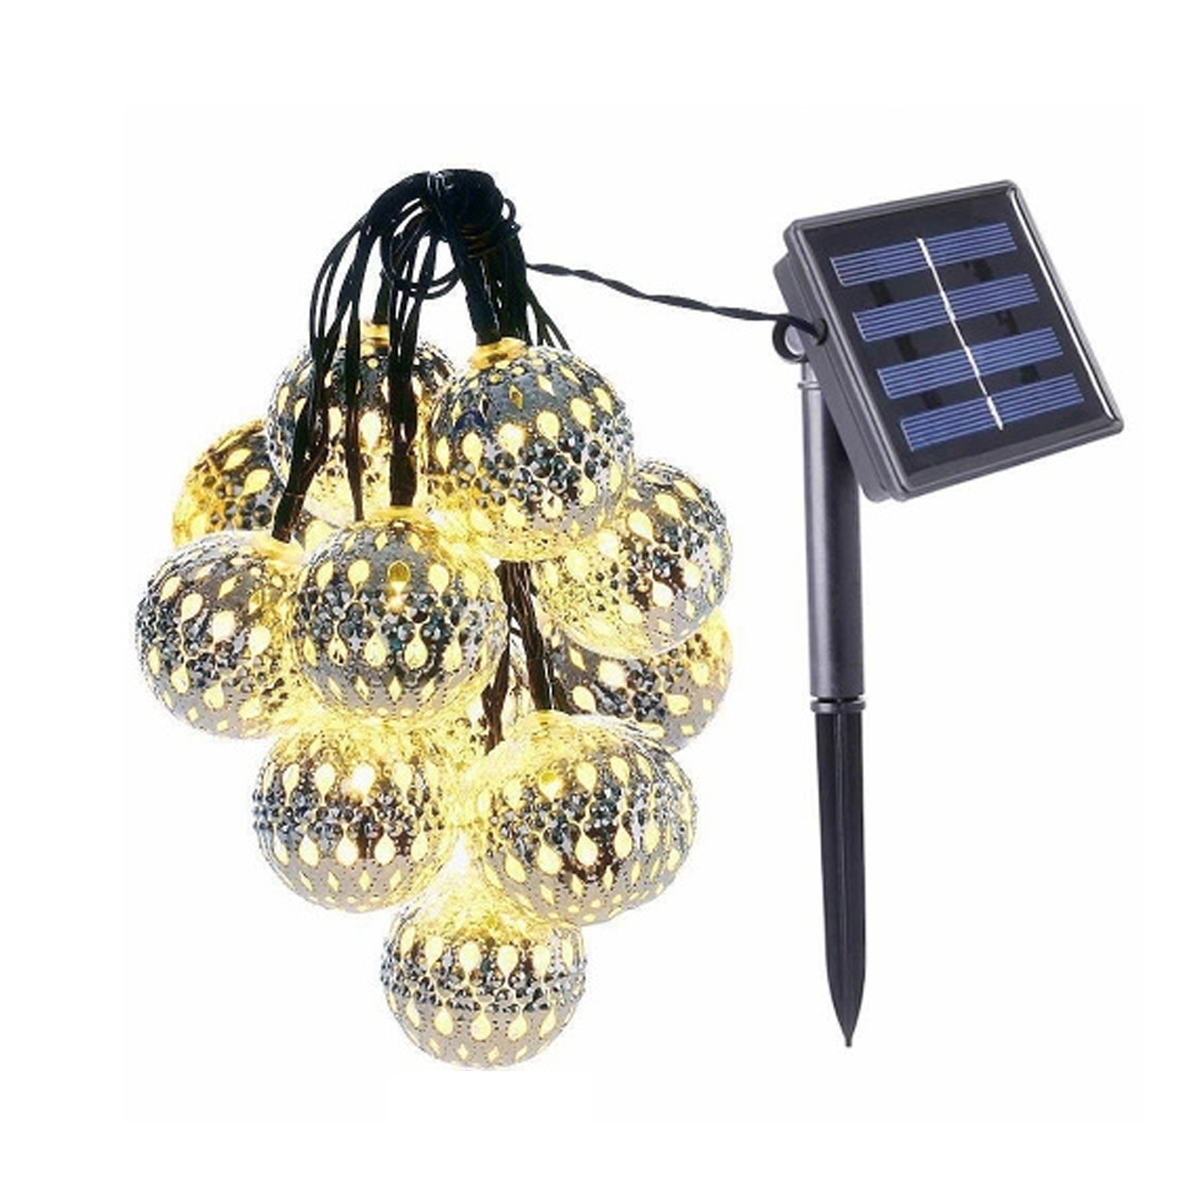 Lichterketten 50 LAMON 7m Kugellicht, solarbetriebene Marokkanisches Globe Lichter Lichterkette, Solar-Lichterketten, warmweiß Warmweiß